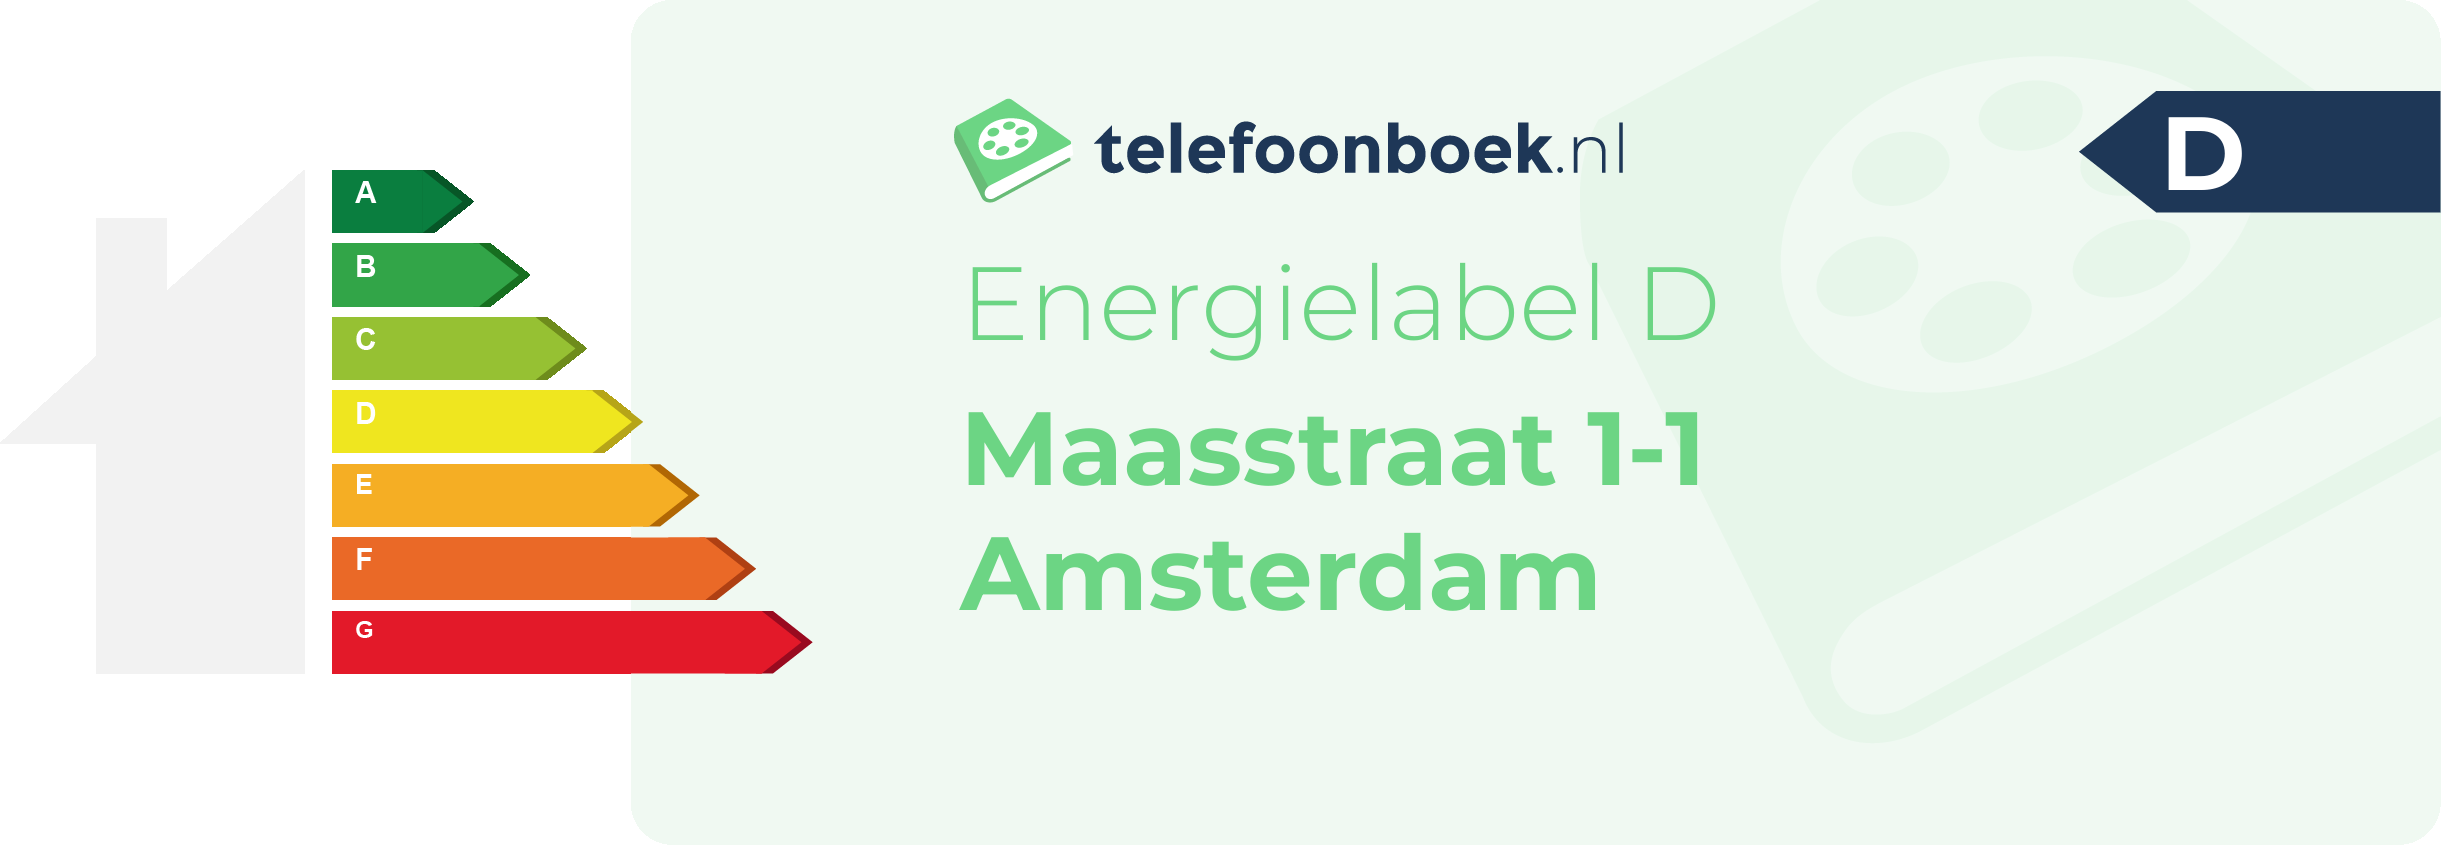 Energielabel Maasstraat 1-1 Amsterdam